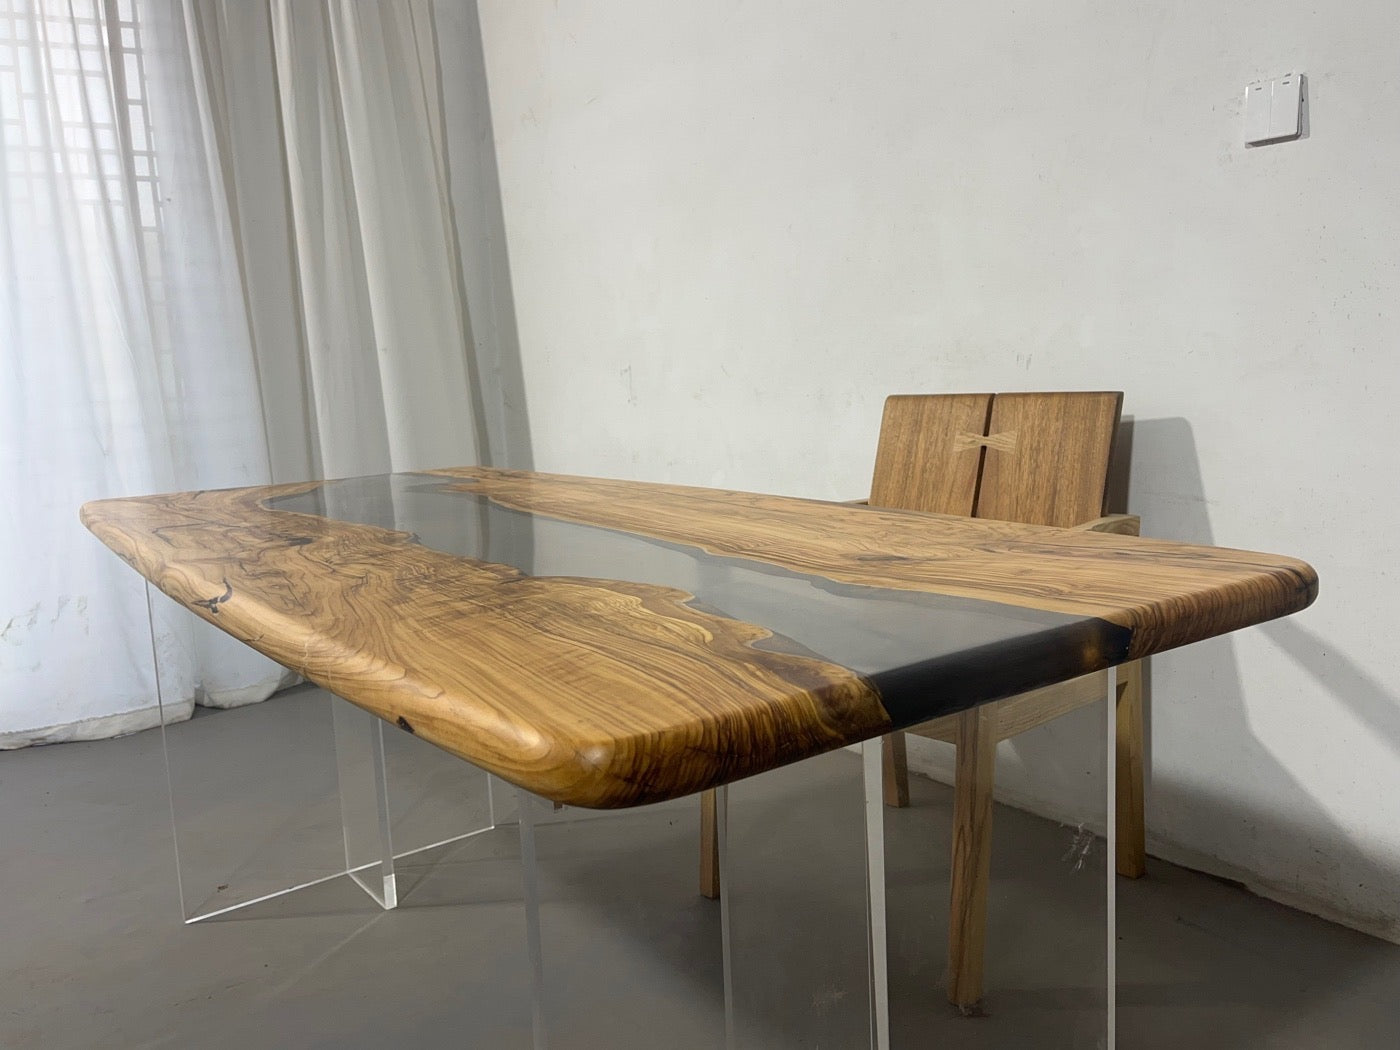 Piano tavolo in resina epossidica trasparente, tavolo in resina epossidica, resina epossidica per tavoli